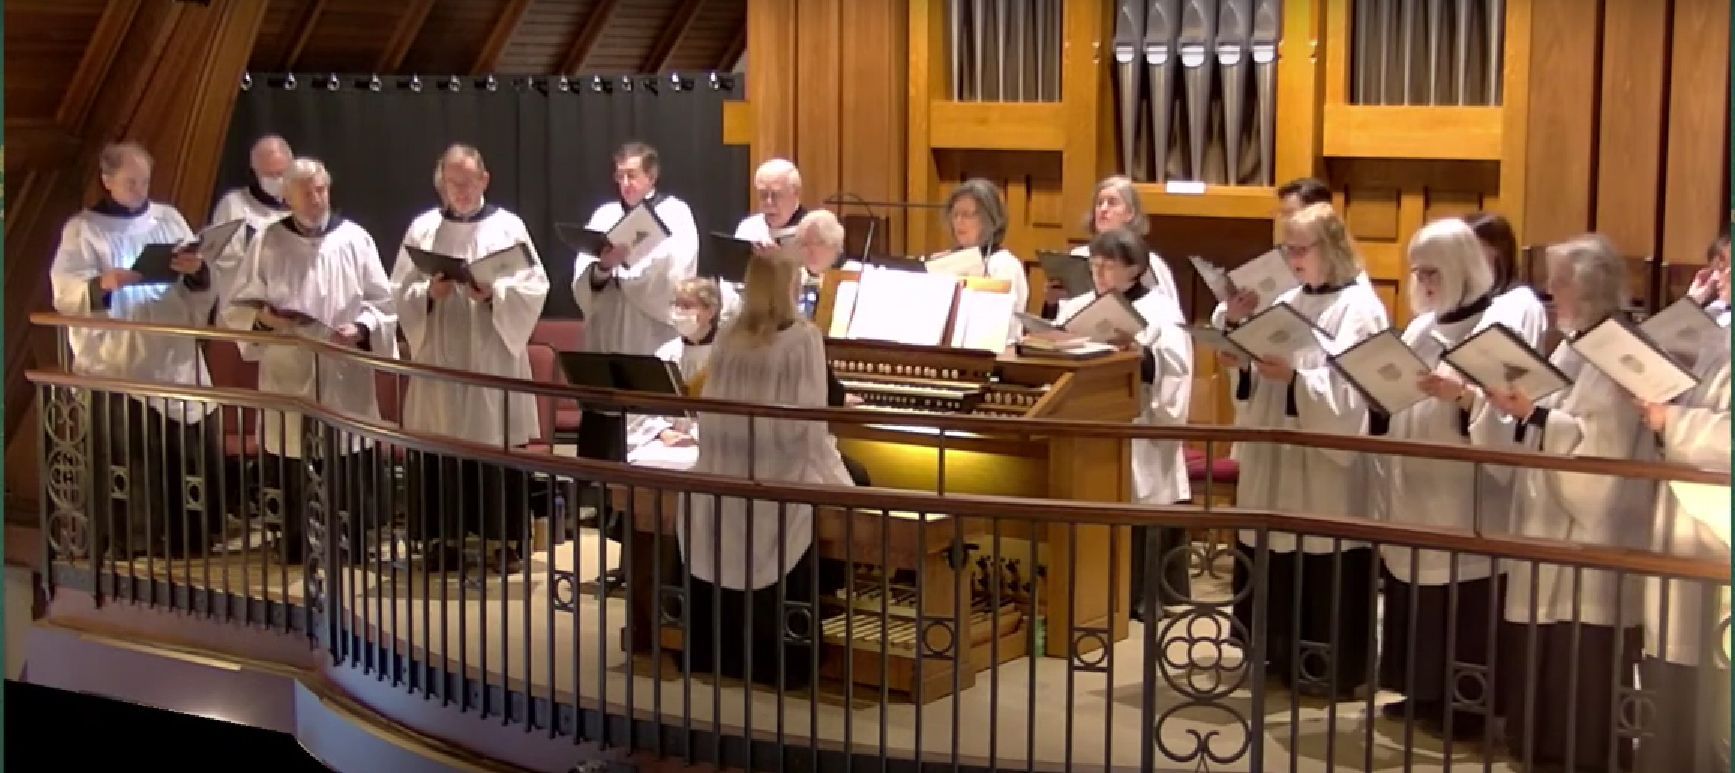 Christ Church Andover Parish Choir